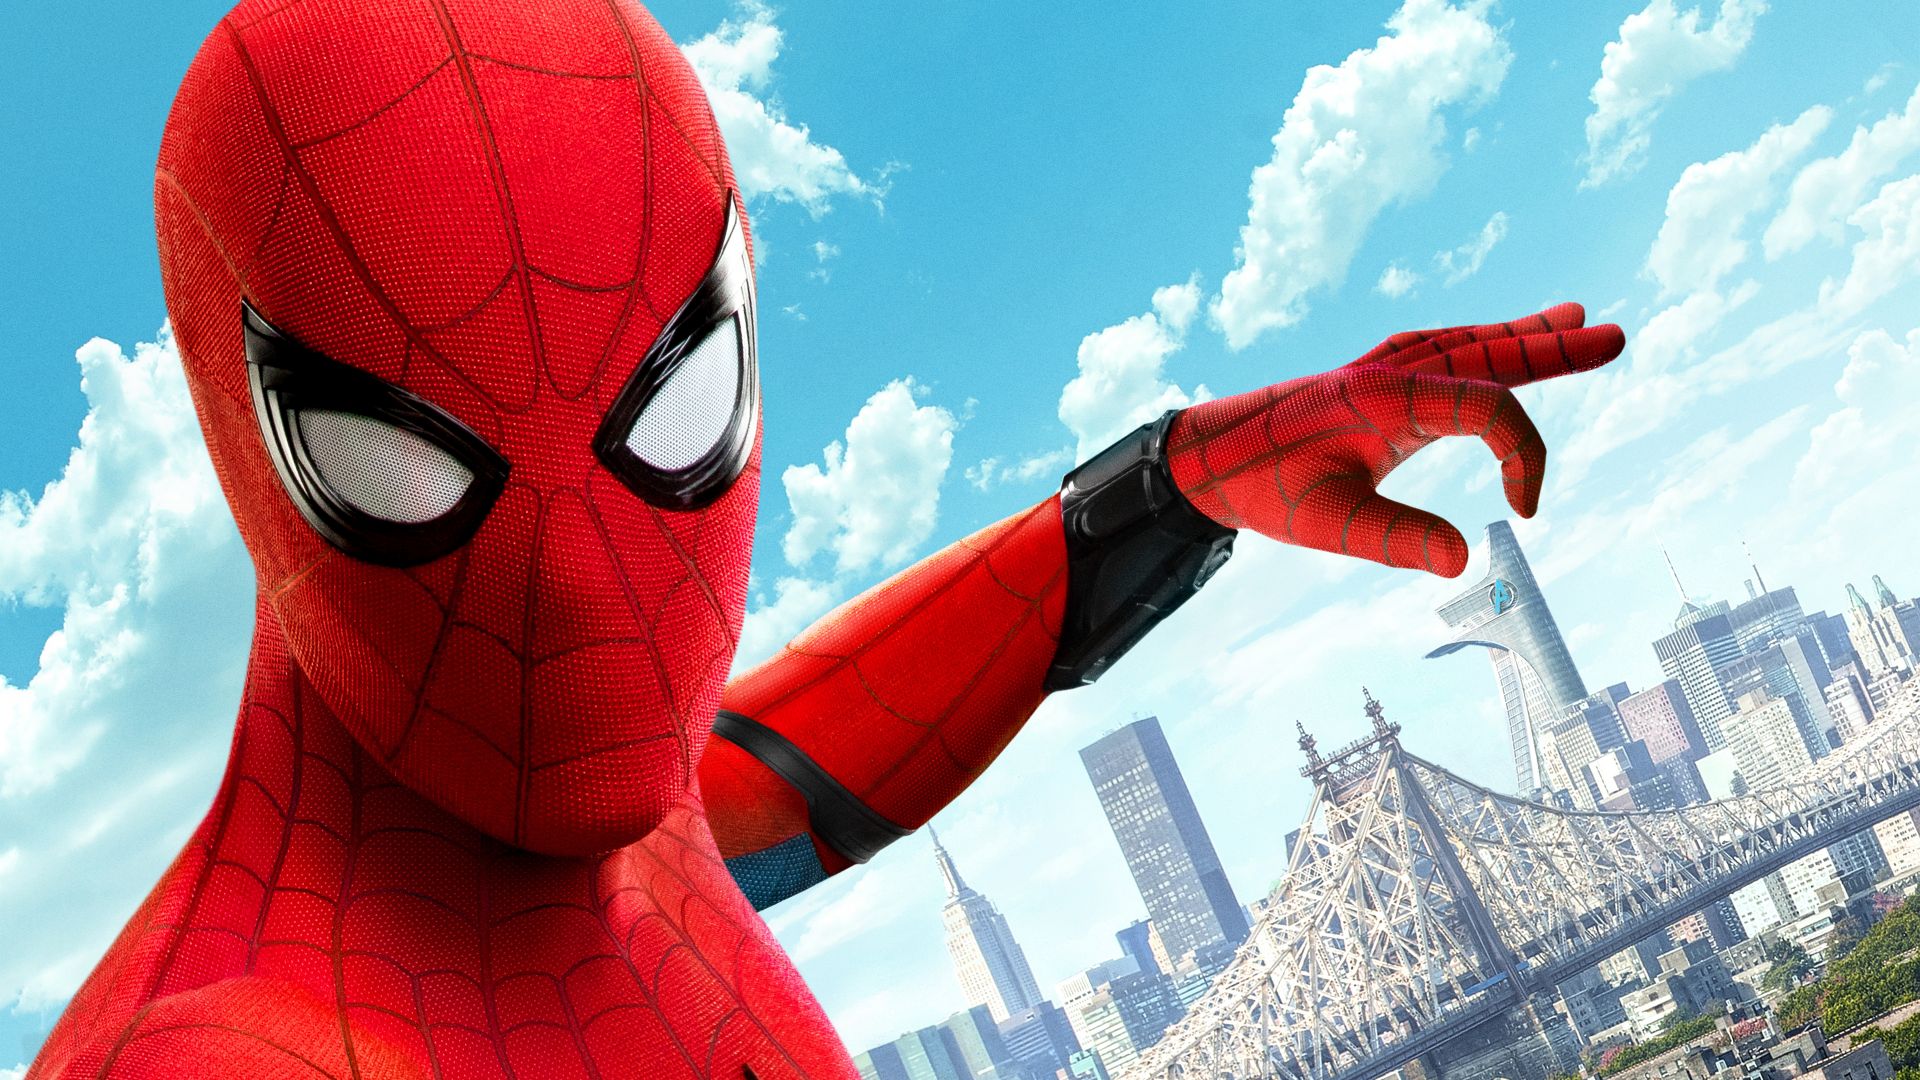 Spider Man: Homecoming đang làm mưa làm gió trên màn ảnh rộng. Bạn đang tò mò muốn hiểu rõ hơn về bộ phim này? Hãy xem qua hình ảnh liên quan và cảm nhận sự trở lại của siêu anh hùng trong một hành trình mới.